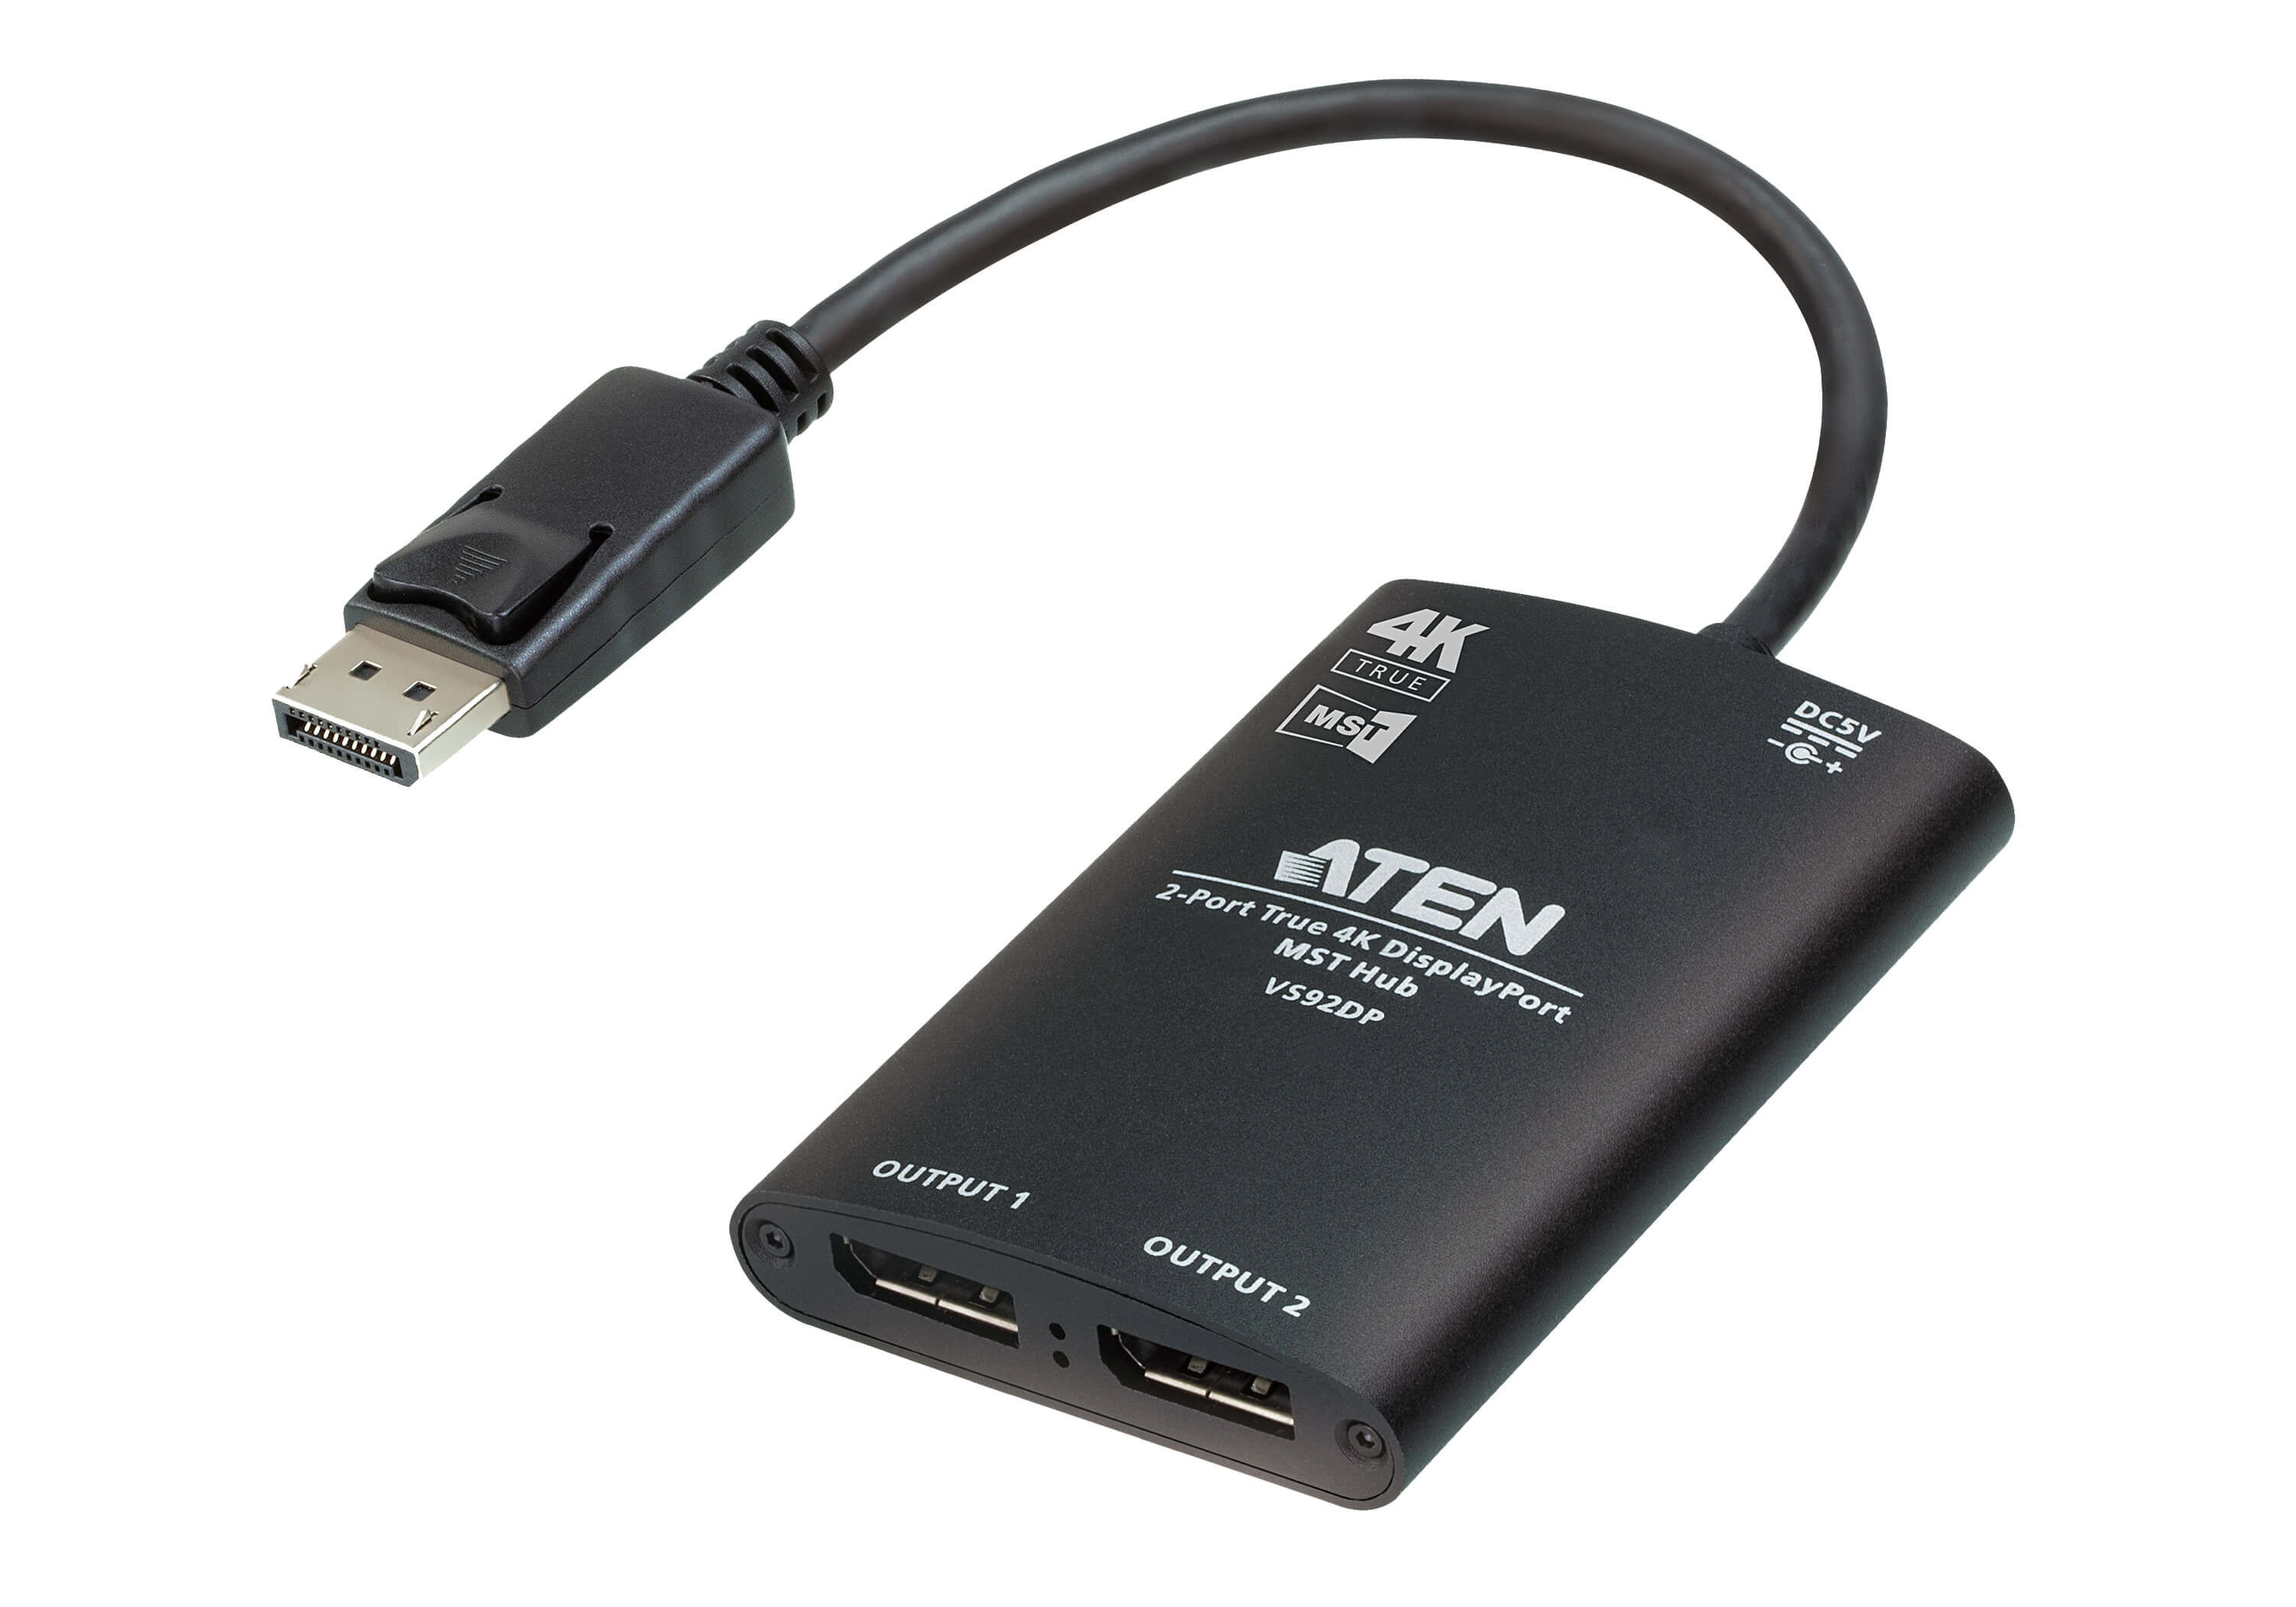 取寄 ATEN VS92DP 2ポート DisplayPort分配器（4K60p、MST対応）